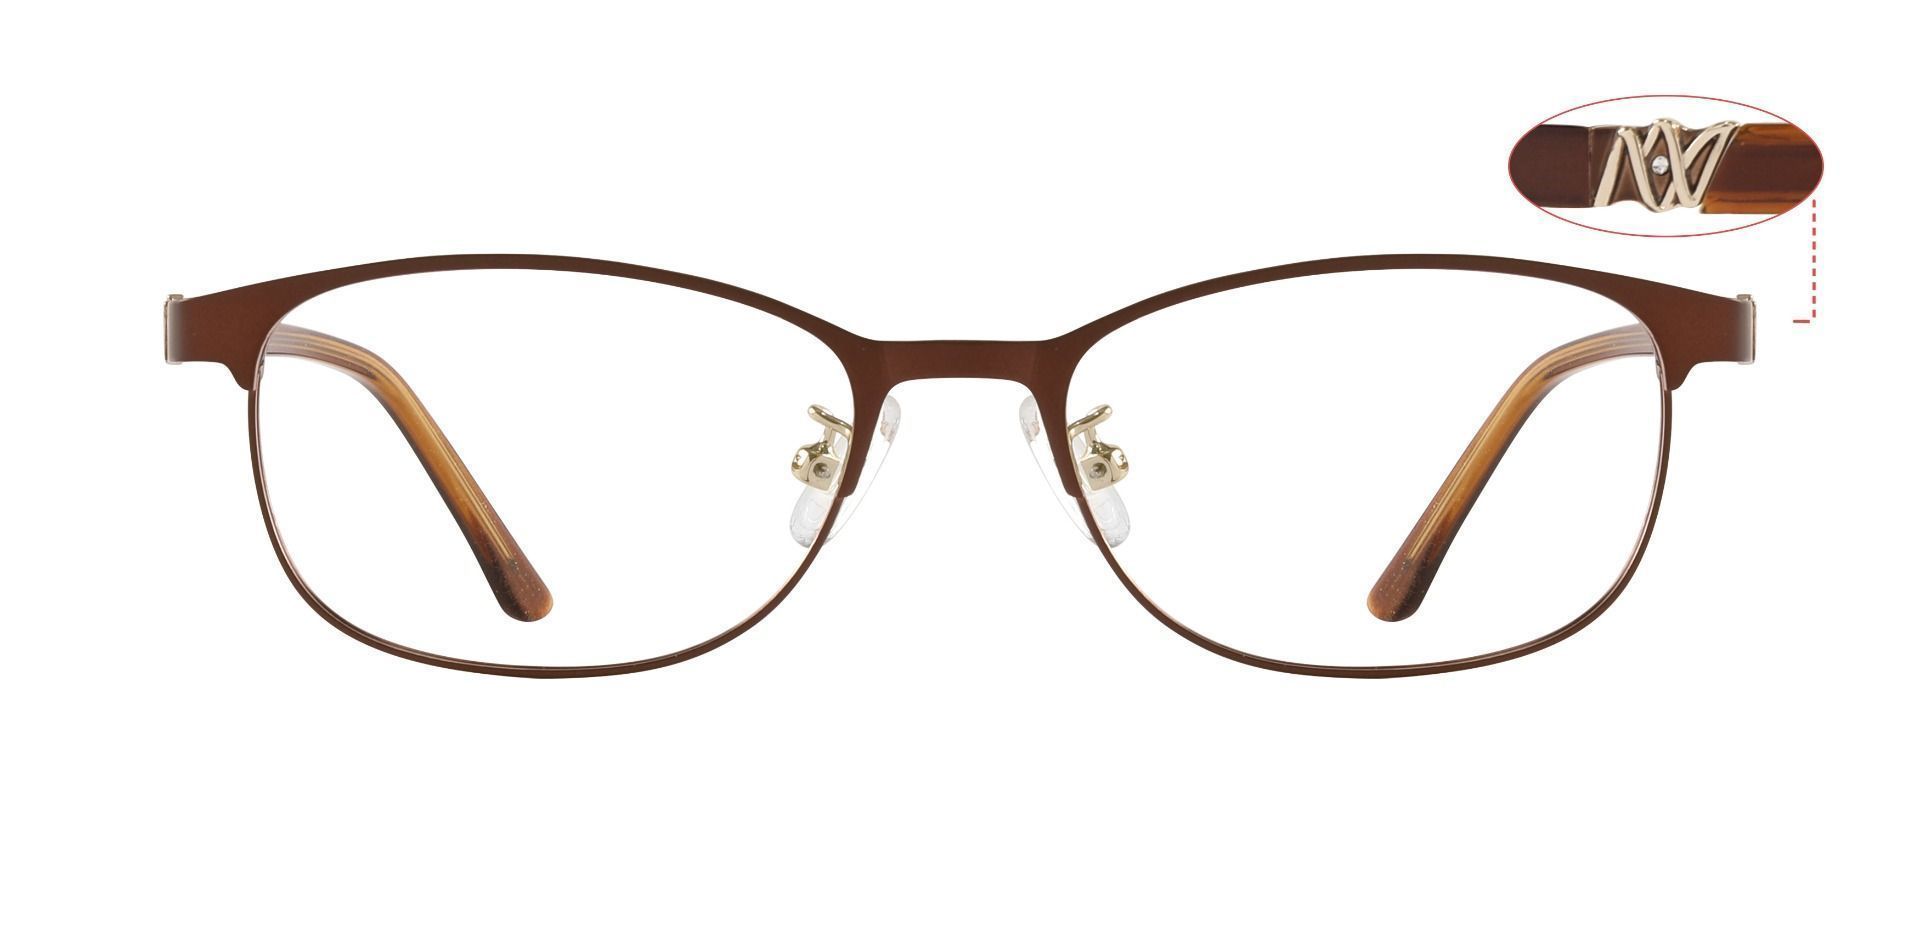 Luisa Oval Prescription Glasses Brown Women S Eyeglasses Payne Glasses